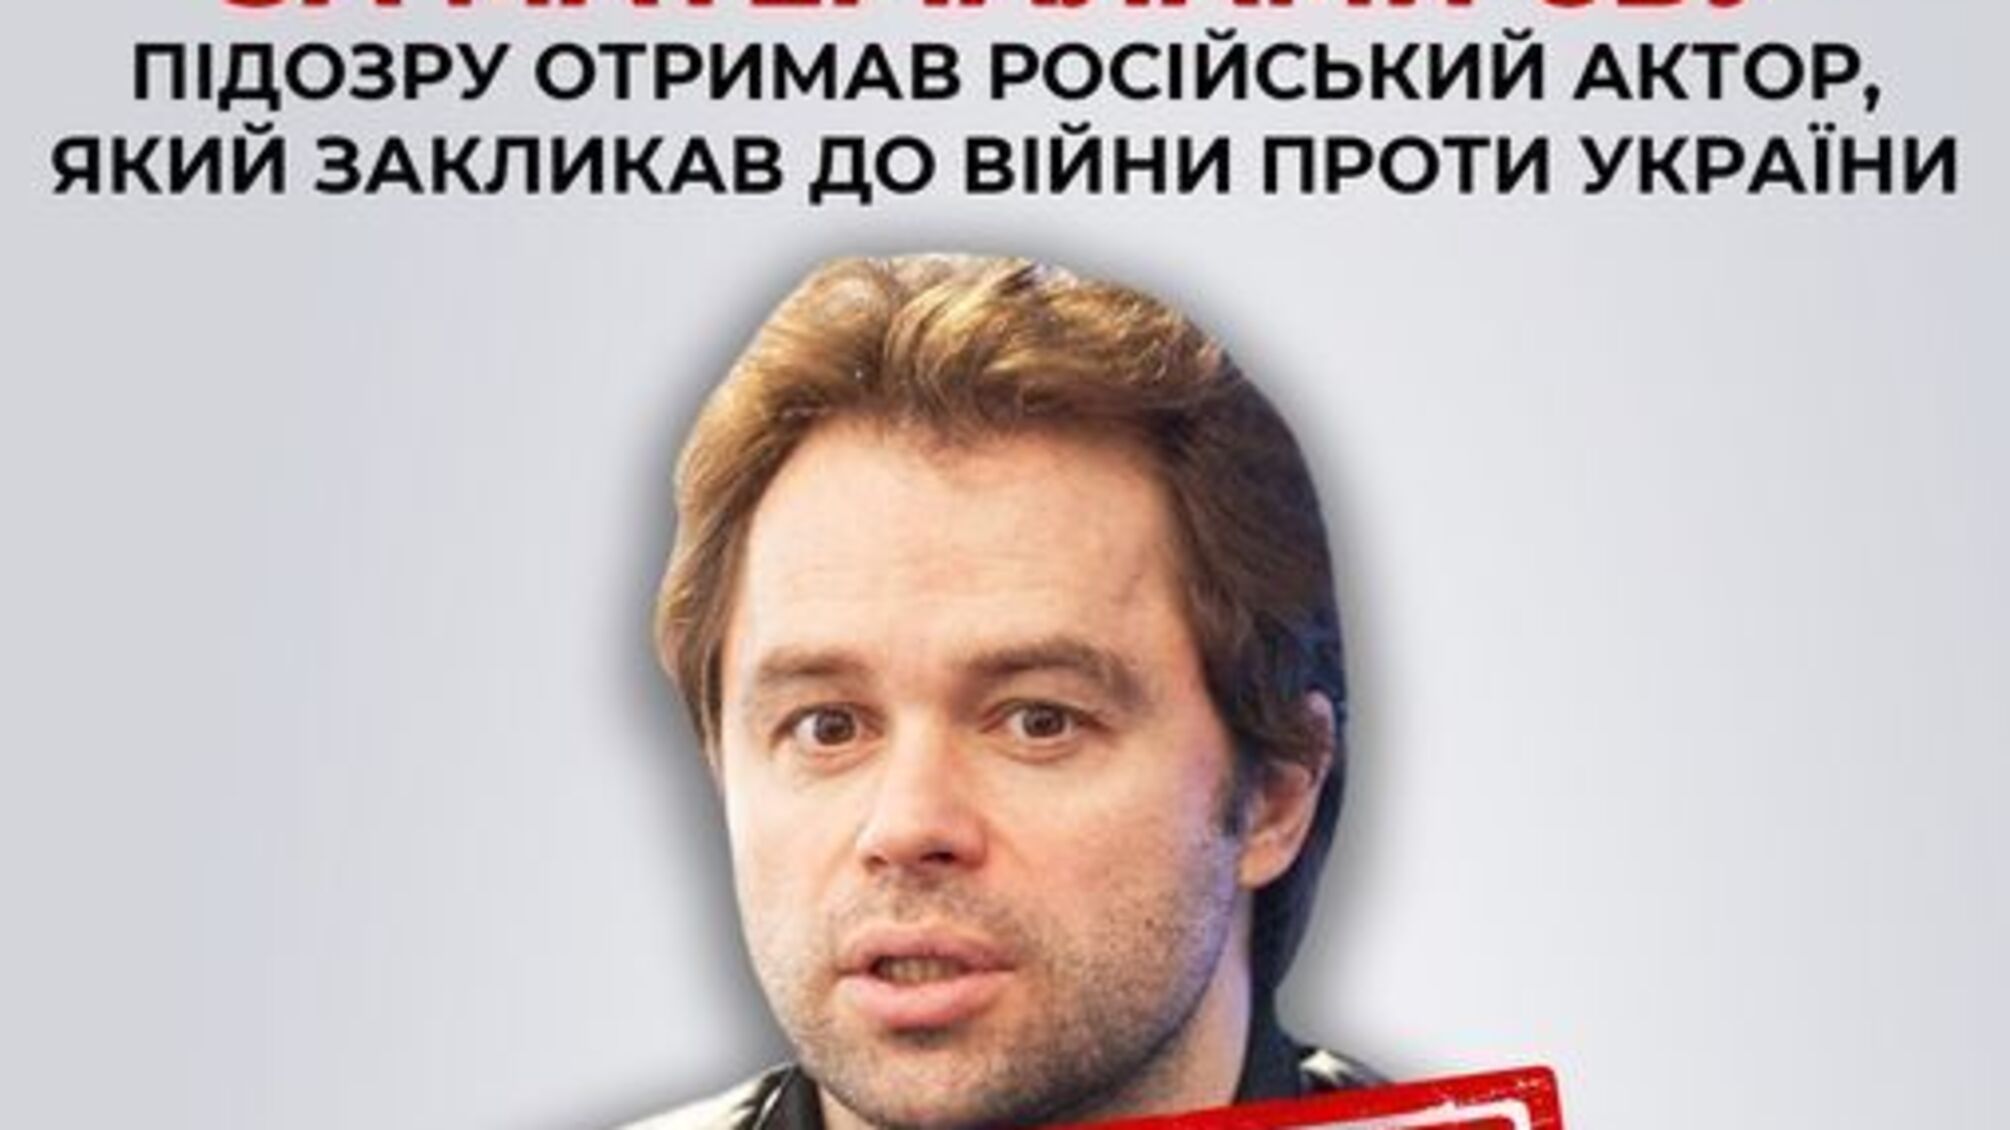 СБУ объявила путинисту Виталию Гогунскому о подозрении по трем статьям